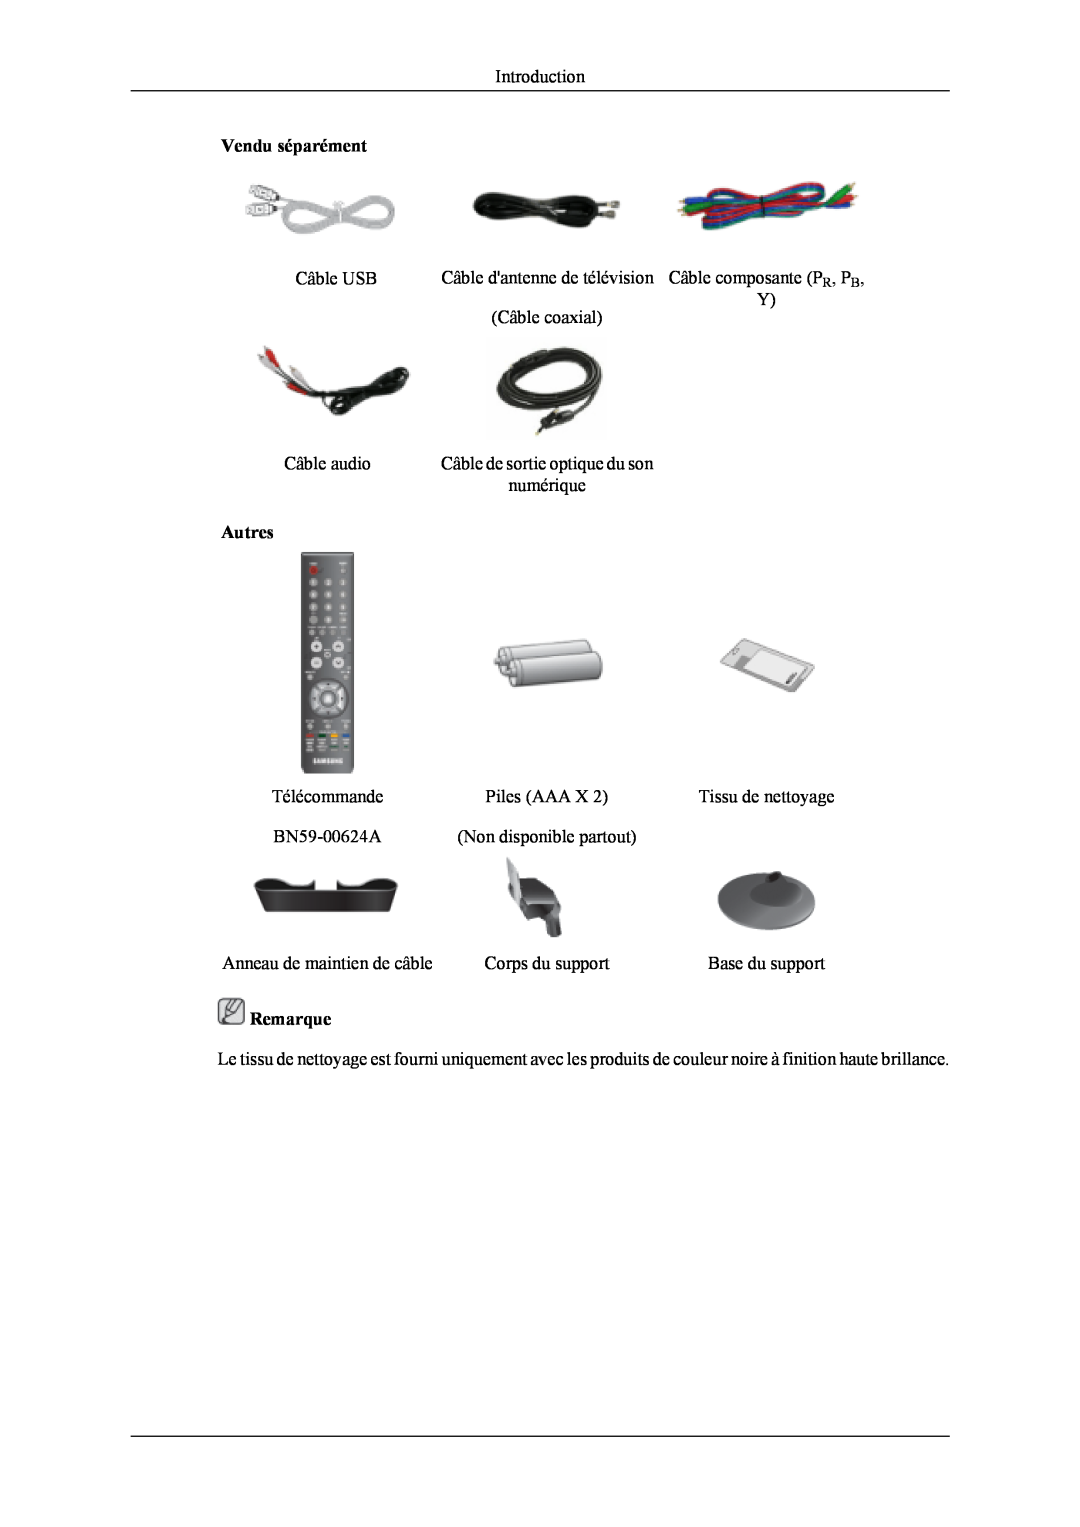 Samsung LS22TDDSUV/EN manual Vendu séparément, Autres, Remarque, Câble de sortie optique du son, Tissu de nettoyage 